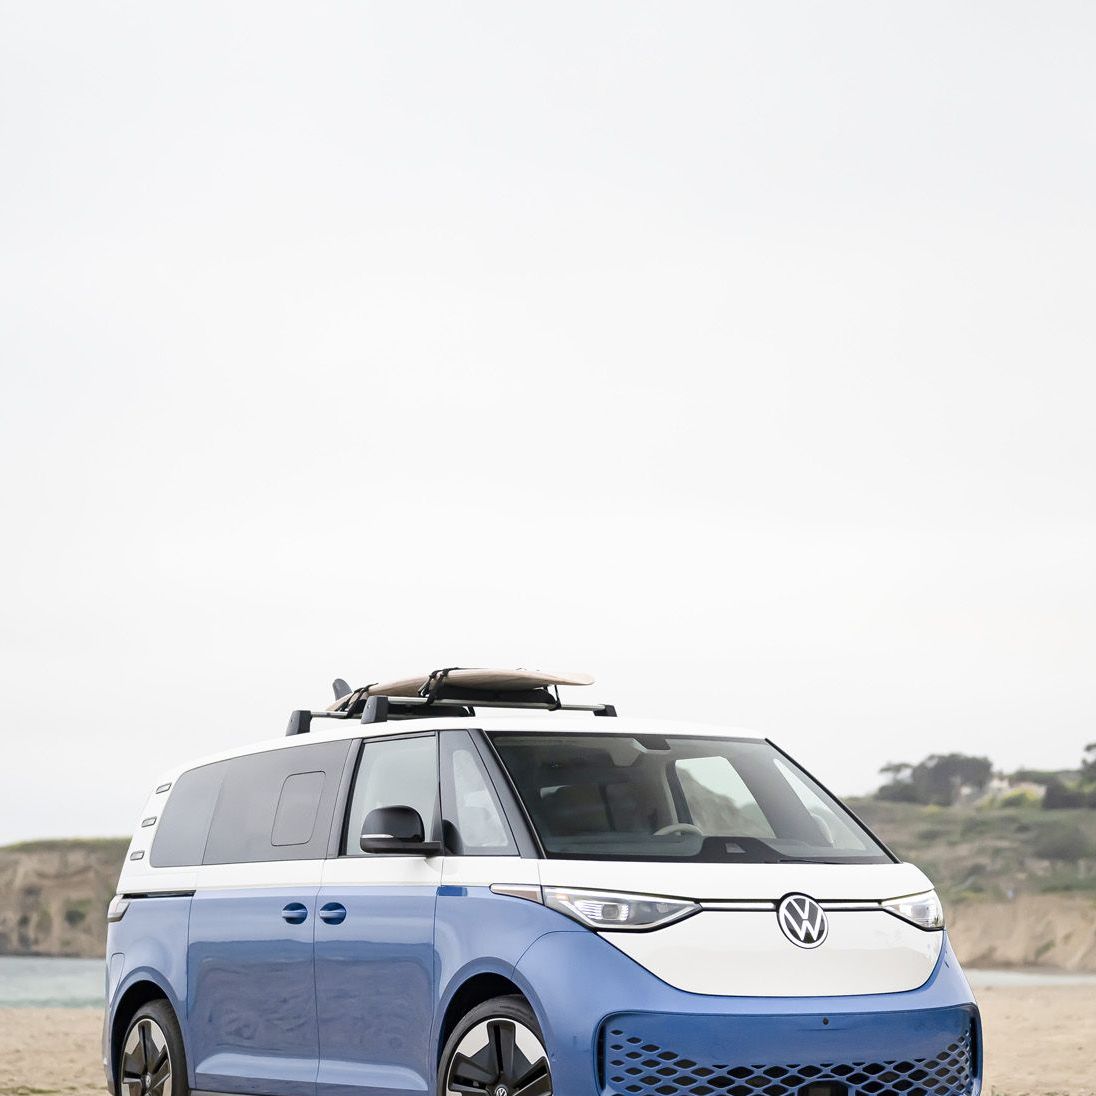 Volkswagen ID Buzz Electric Van: Specs, Price, Release Date